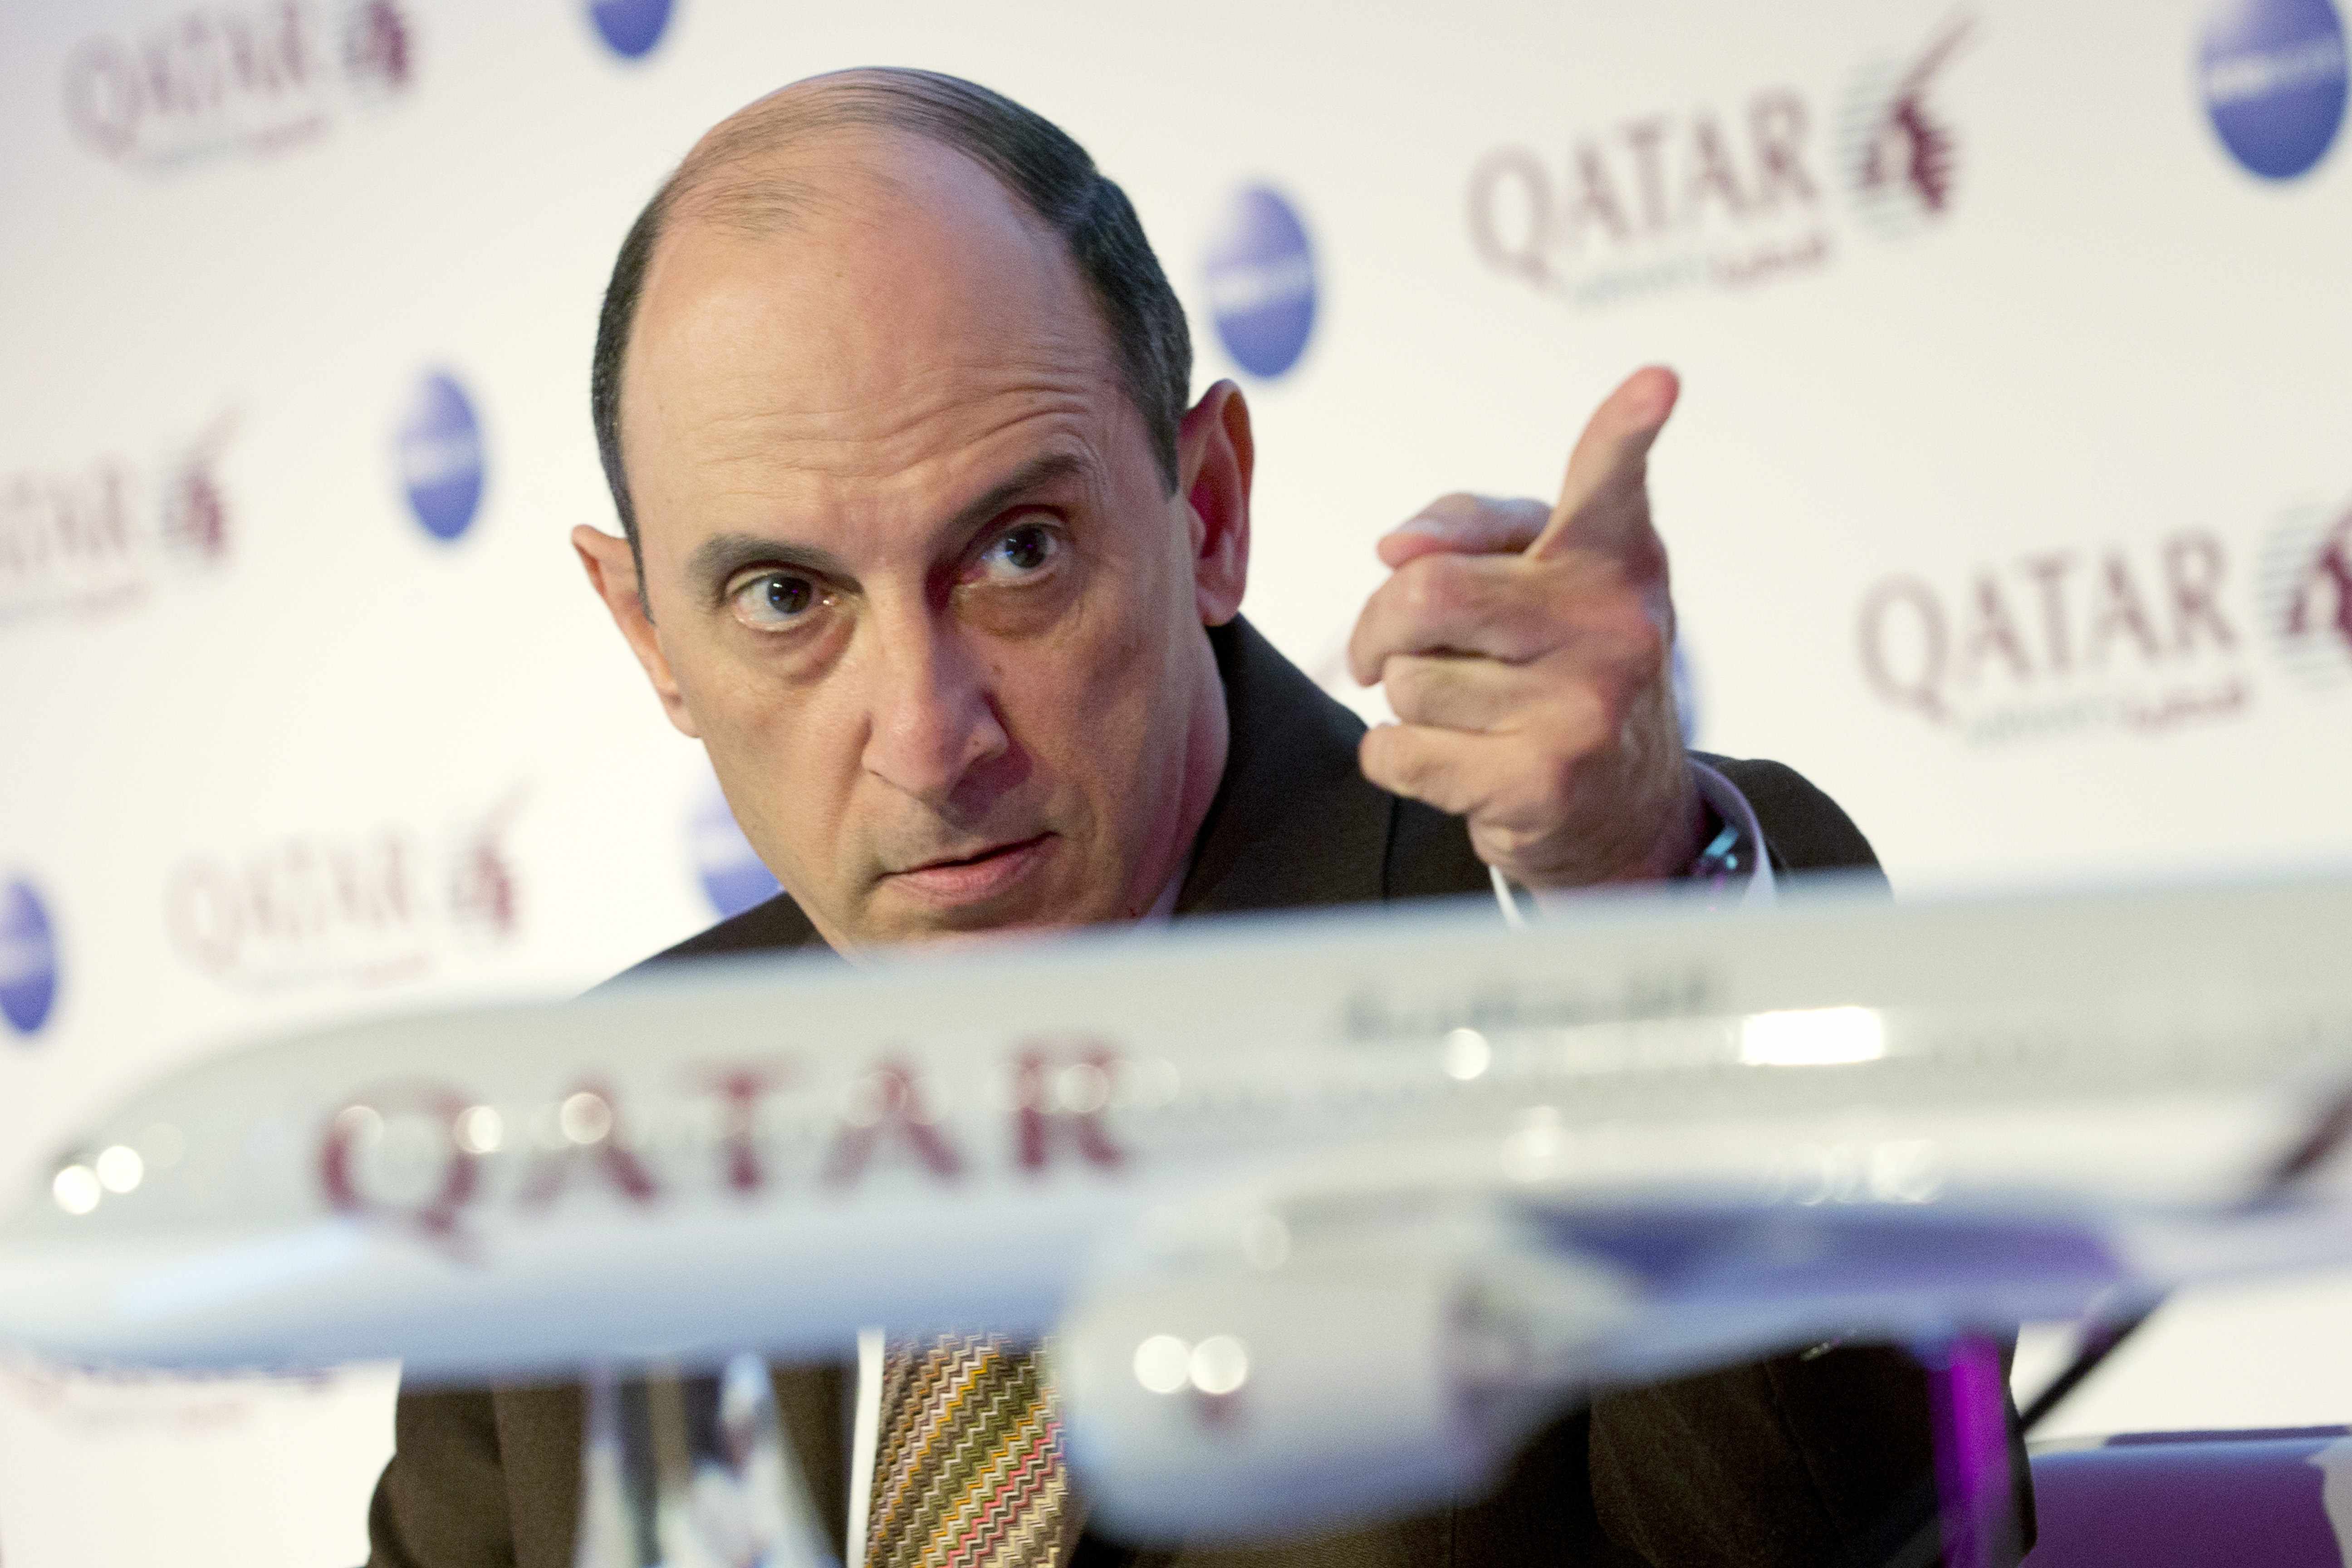 El jefe de Qatar Airways dice que Delta utiliza aviones podridos